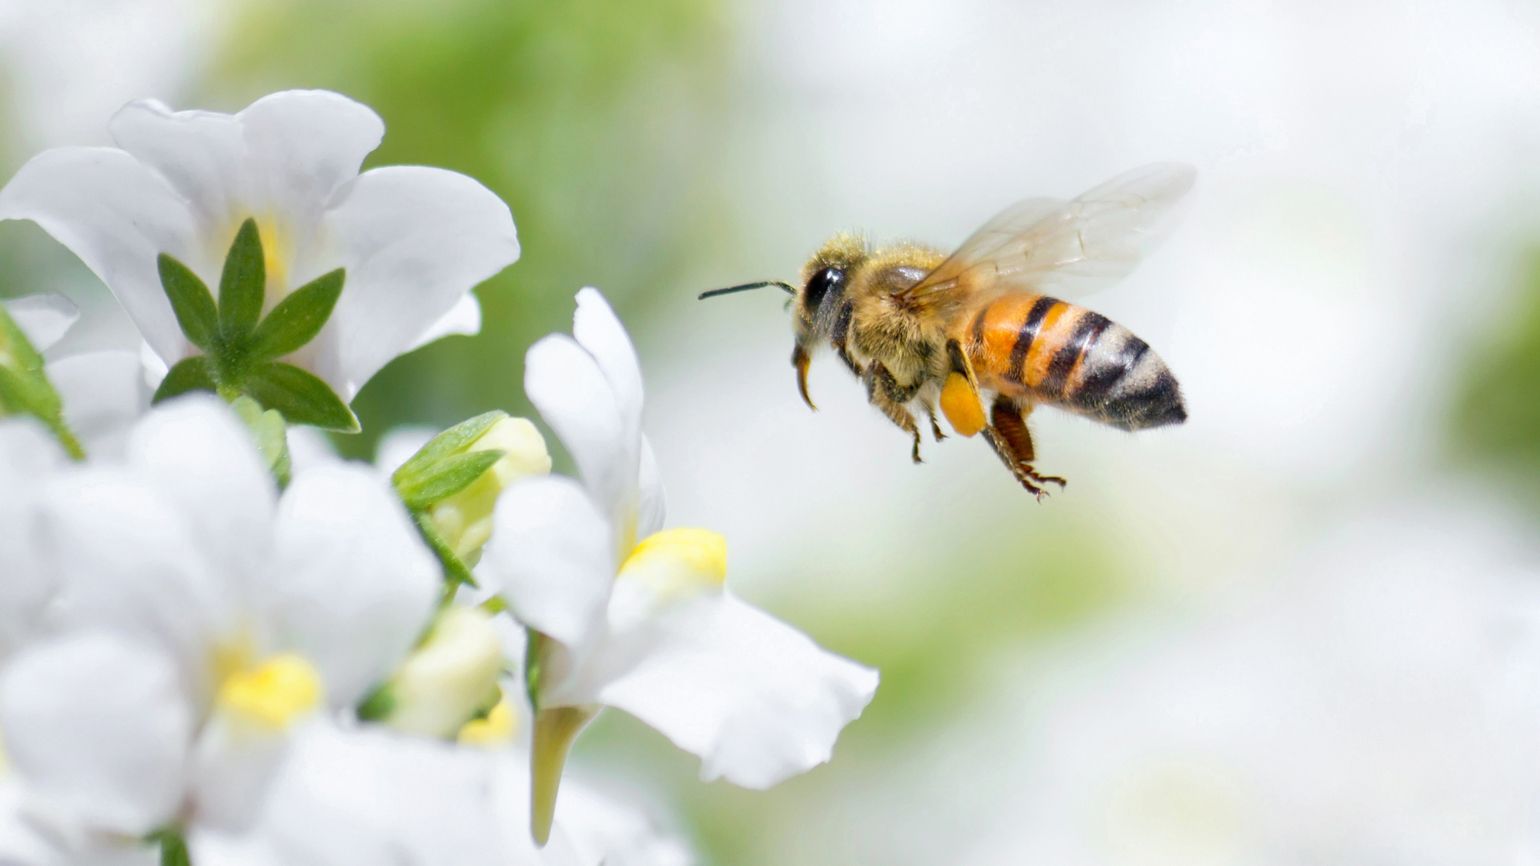 超过 300 张关于“蜜蜂图片”和“蜜蜂”的免费图片 - Pixabay